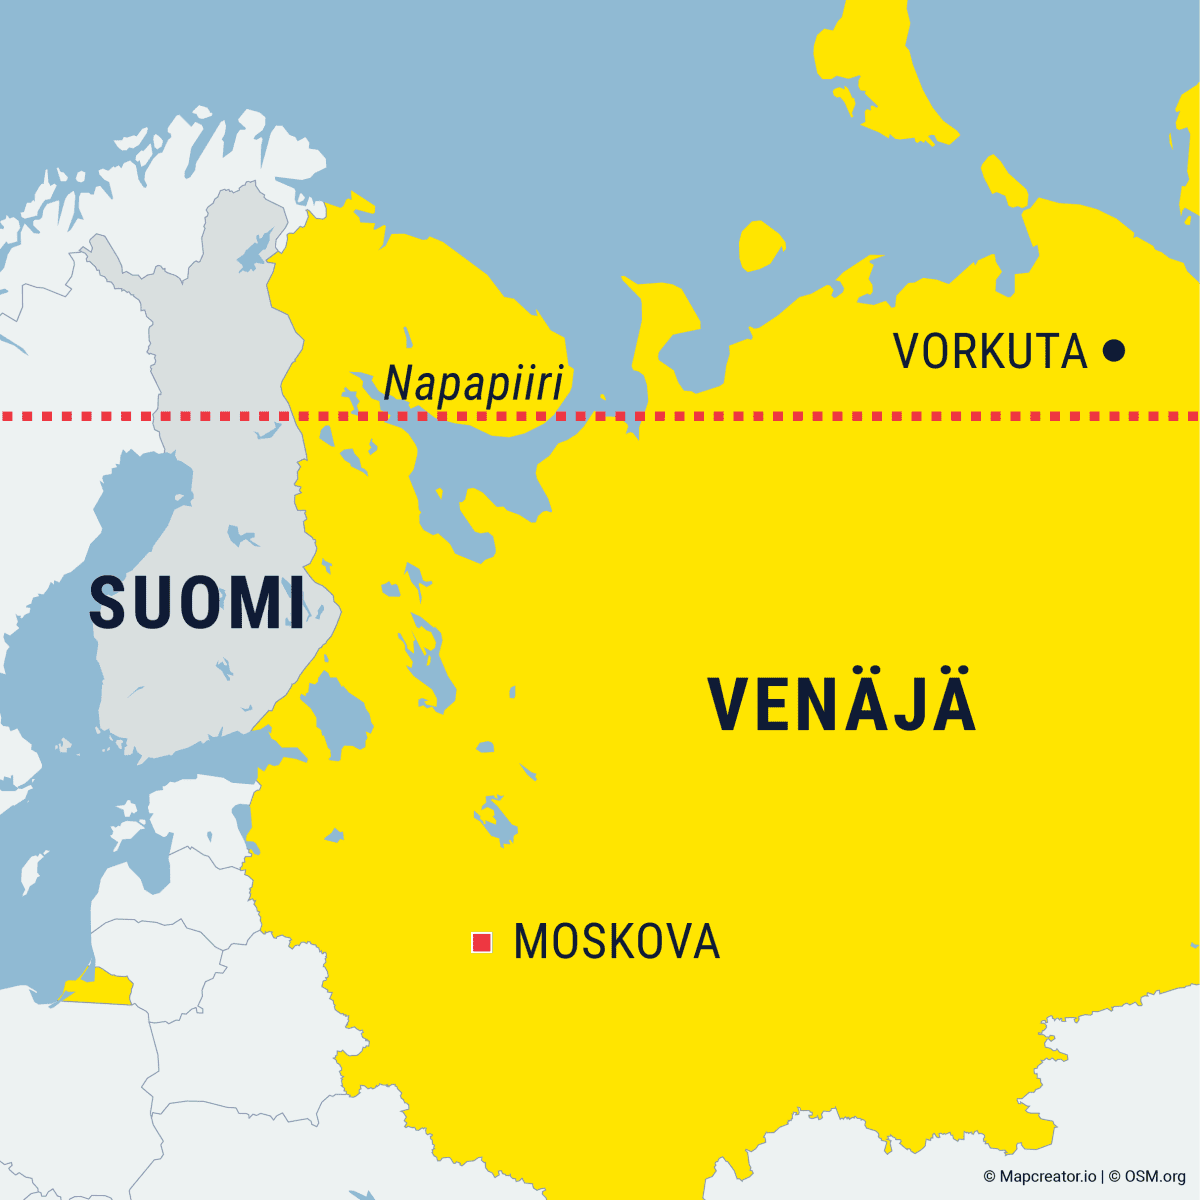 Tämä on Venäjän nopeimmin kuoleva kaupunki – Arktisessa Vorkutassa nuoret  miehet kaipaavat joko kaivokseen tai etelään